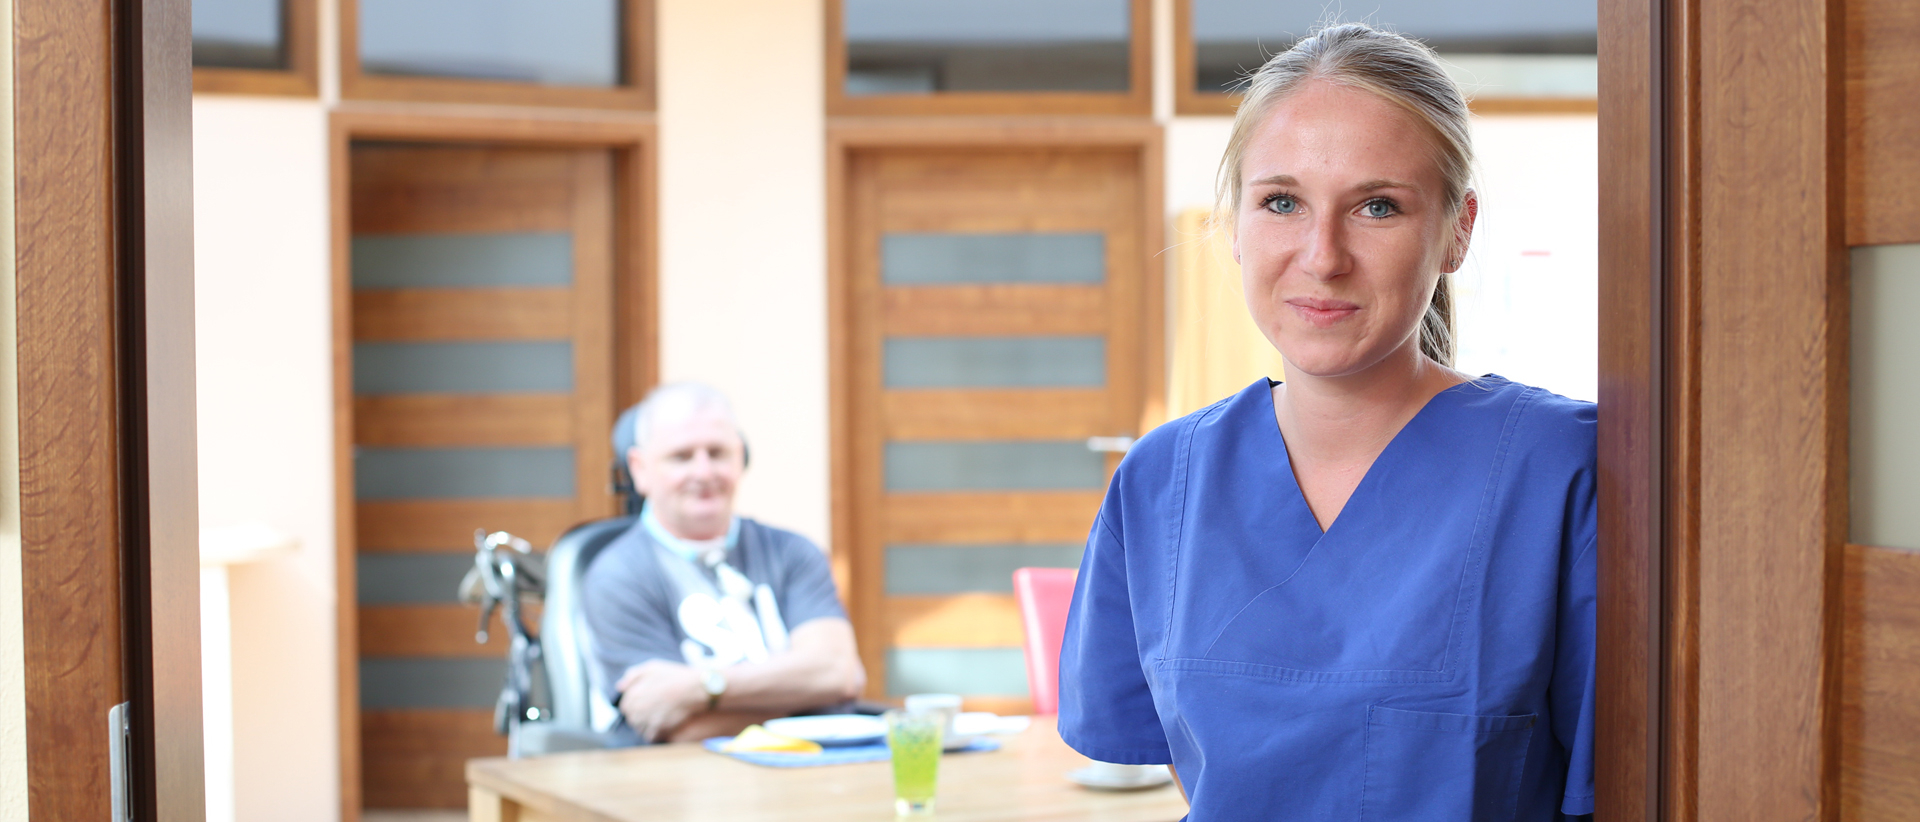 Pflegekraft im blauen Kassack, Patient im Hintergrund